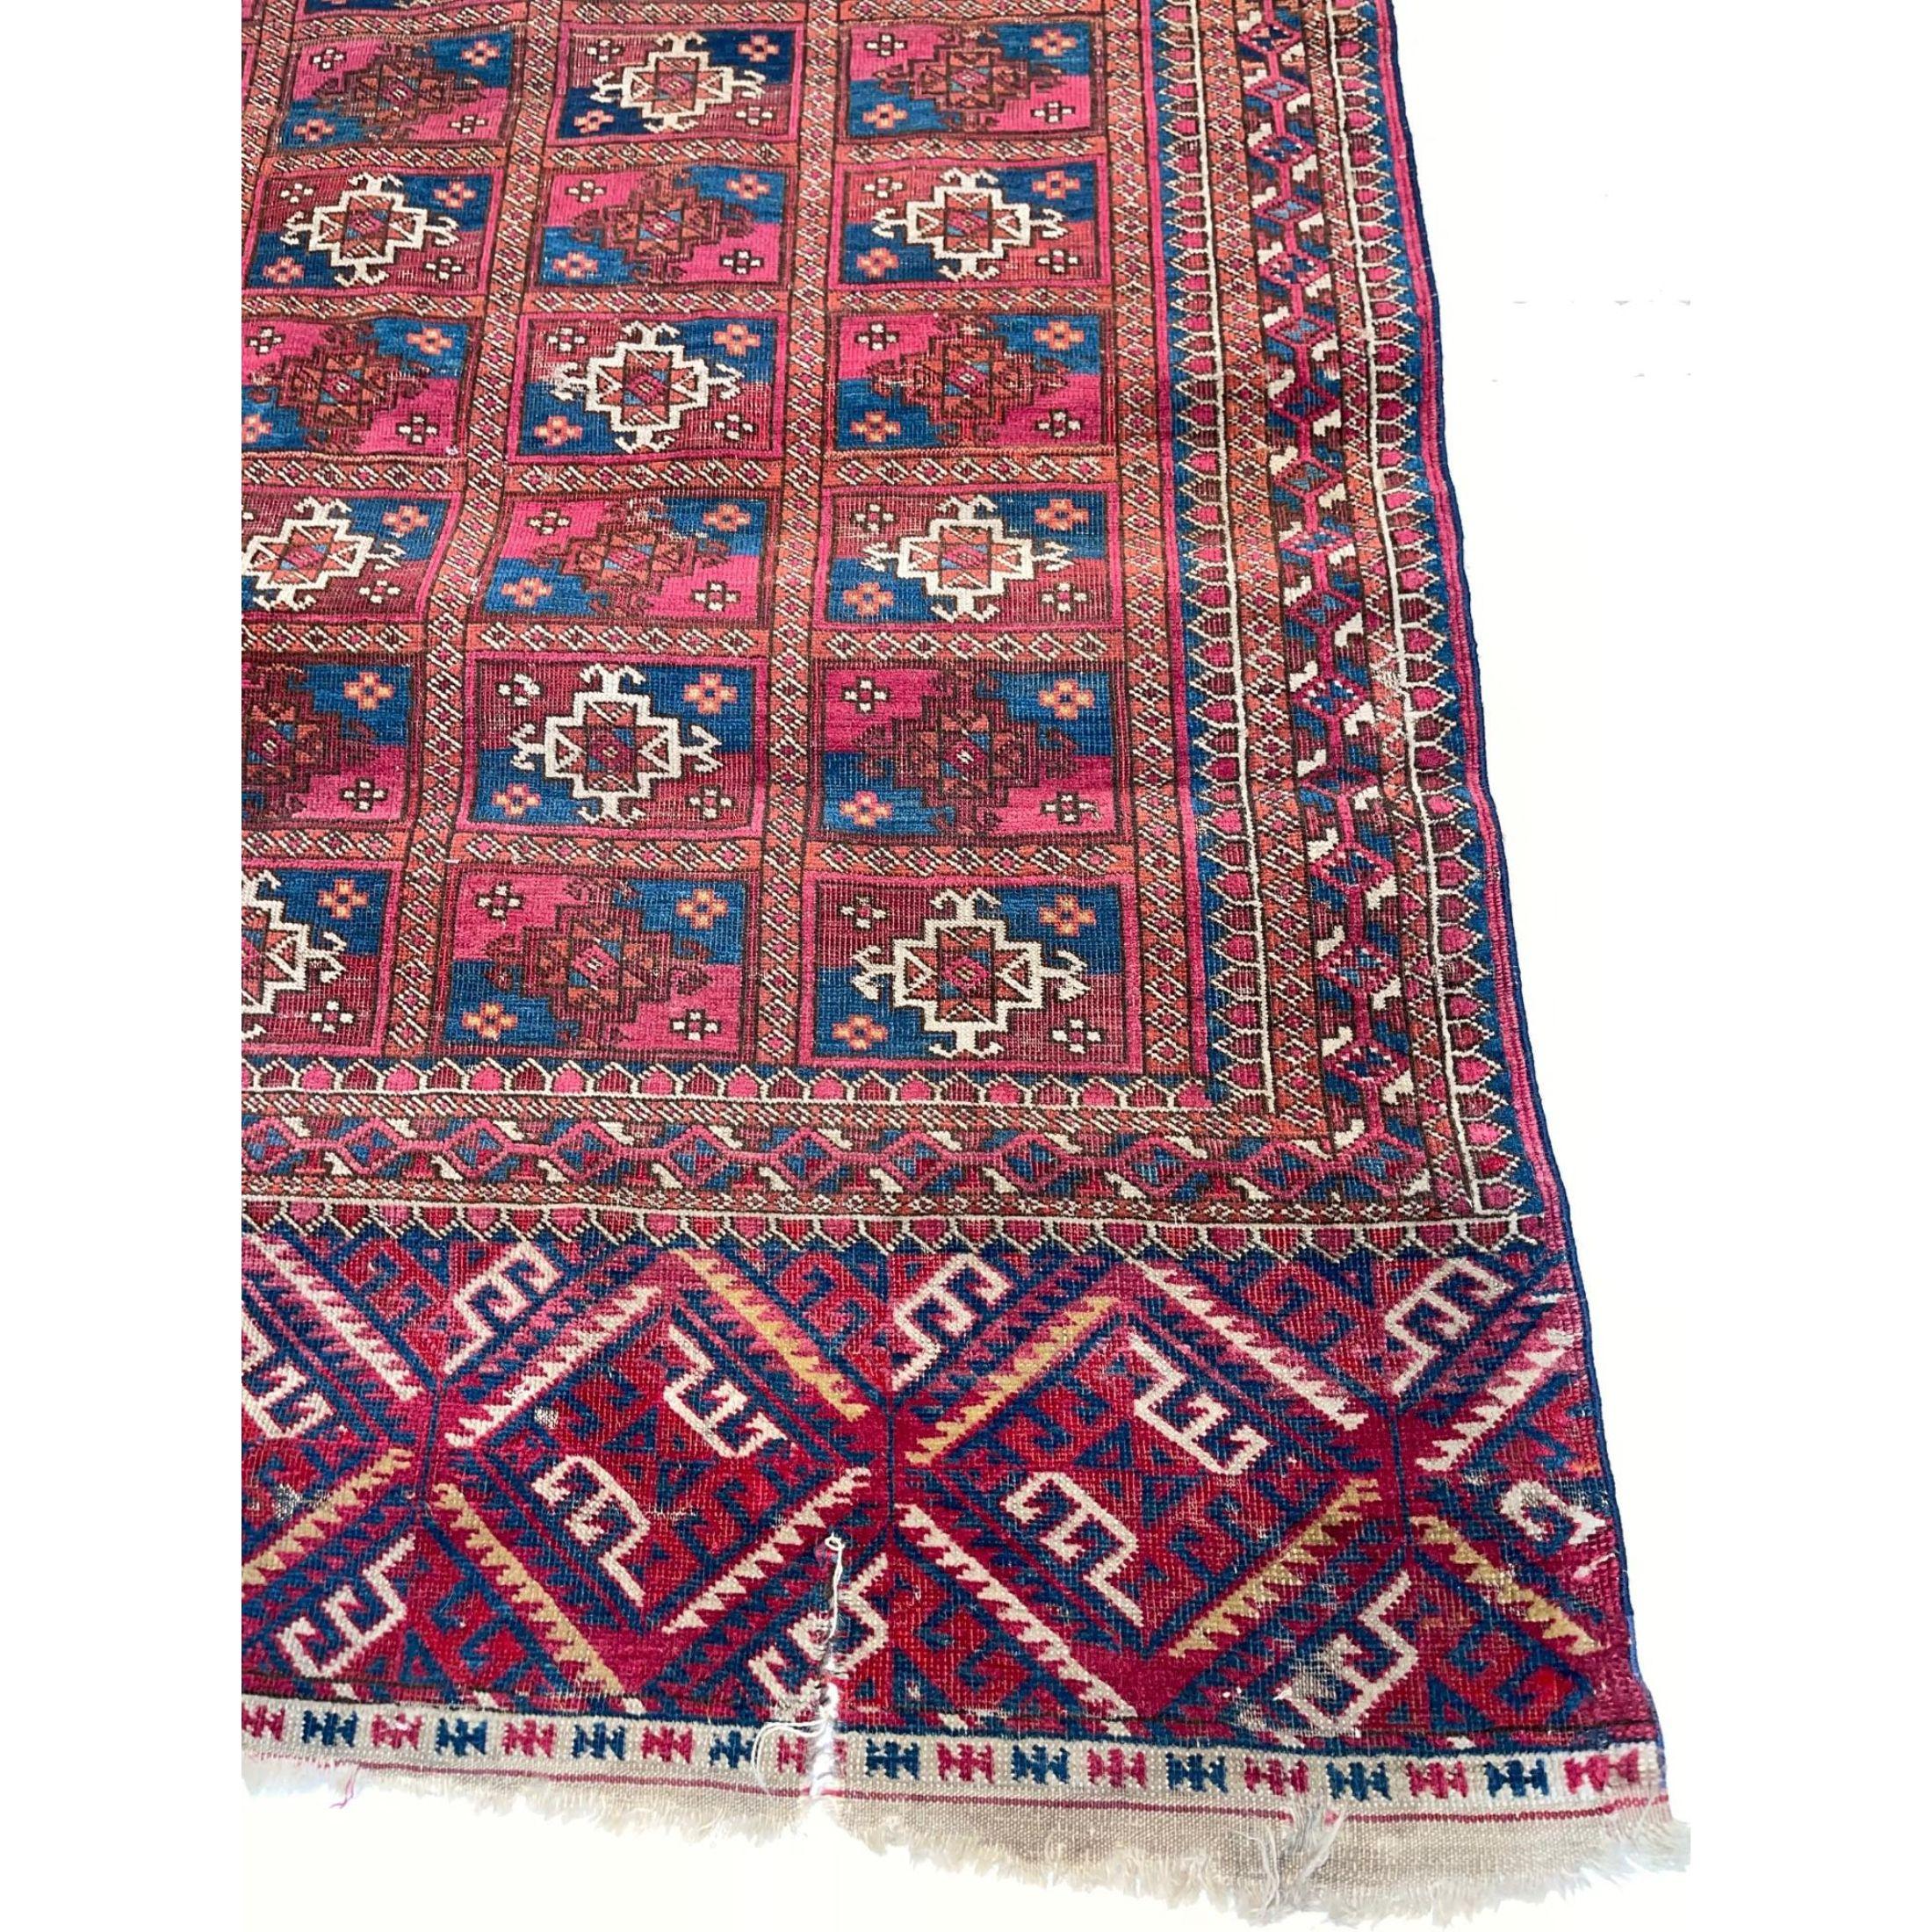 Belutsch-Teppiche - Antike Belutsch-Teppiche sind ein einzigartiges Phänomen in der Welt der antiken orientalischen Teppiche. Die Belutsch-Teppiche stammen nicht aus einer bestimmten, leicht zu identifizierenden Region, sondern sind Ausdruck einer